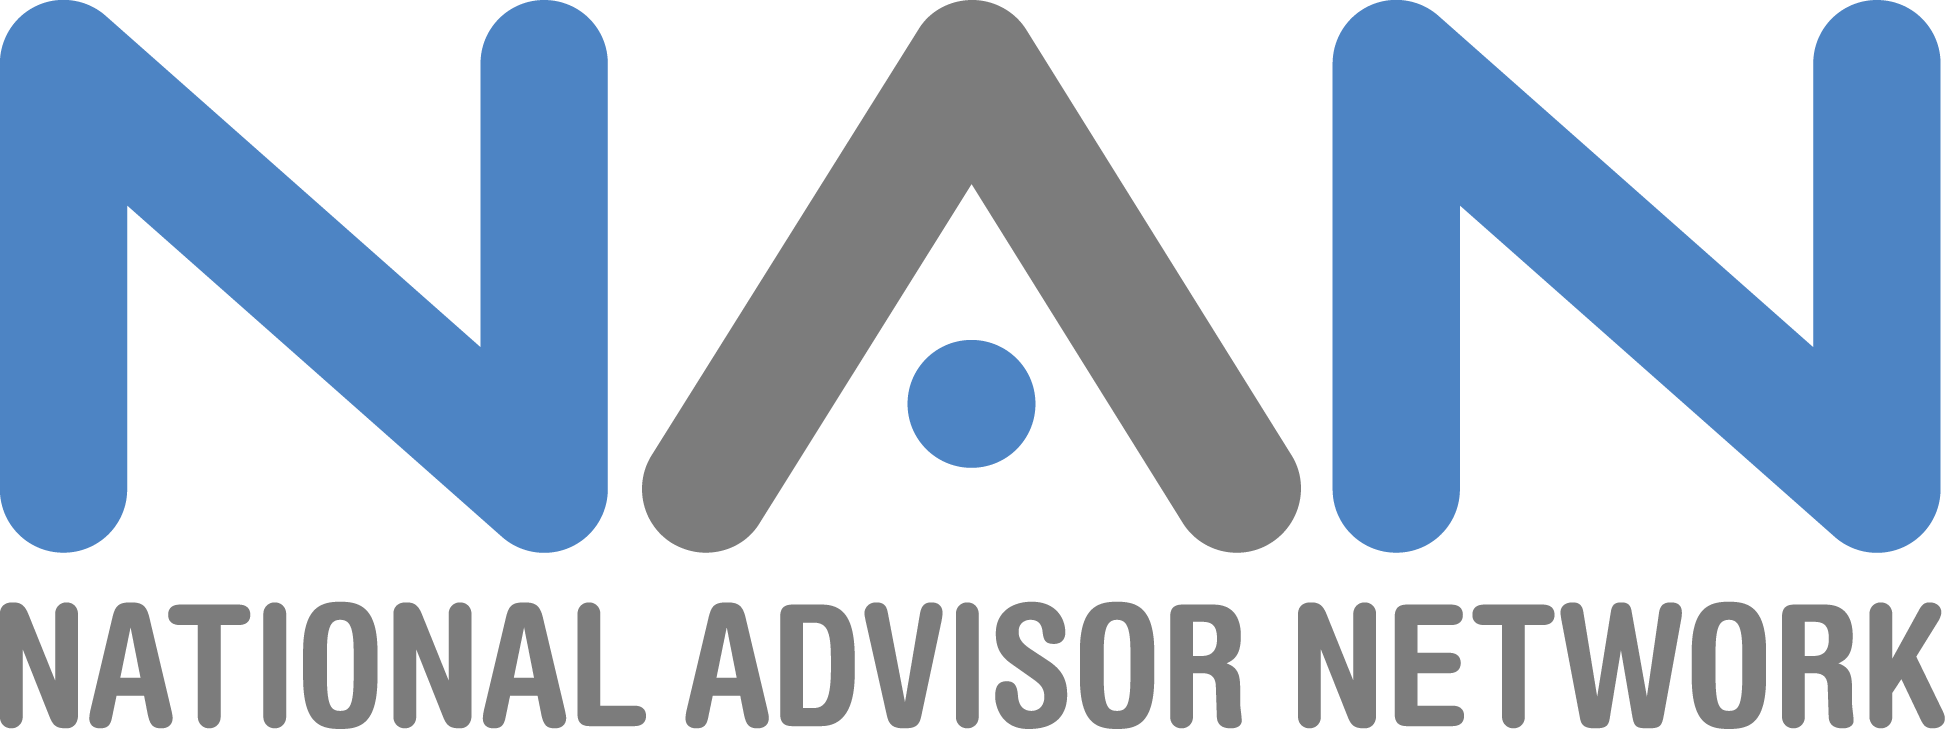 national advisor network